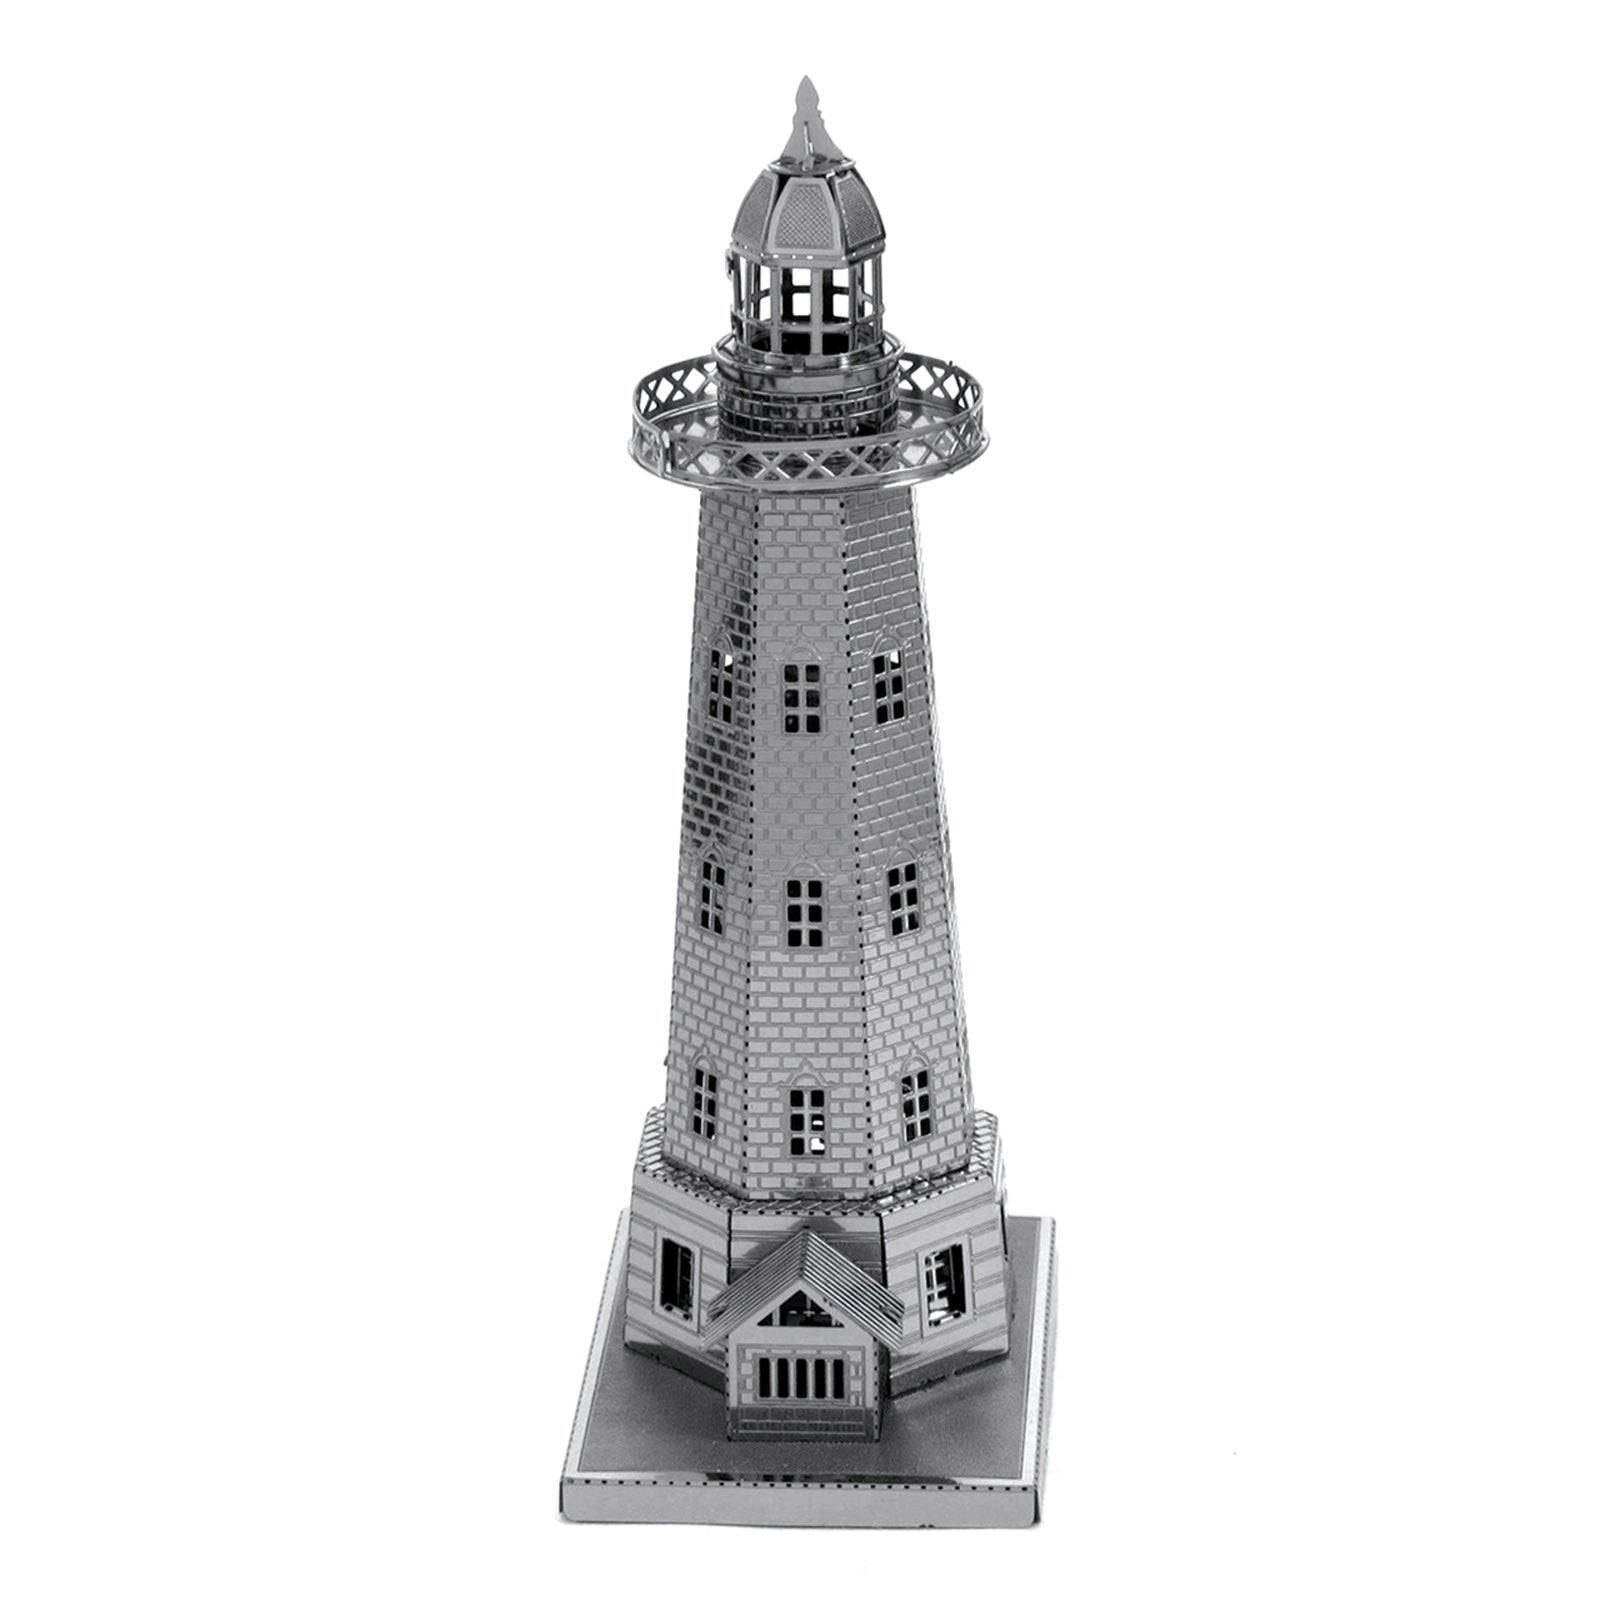 Fascinations Metal Works Lighthouse 3D Model Kit